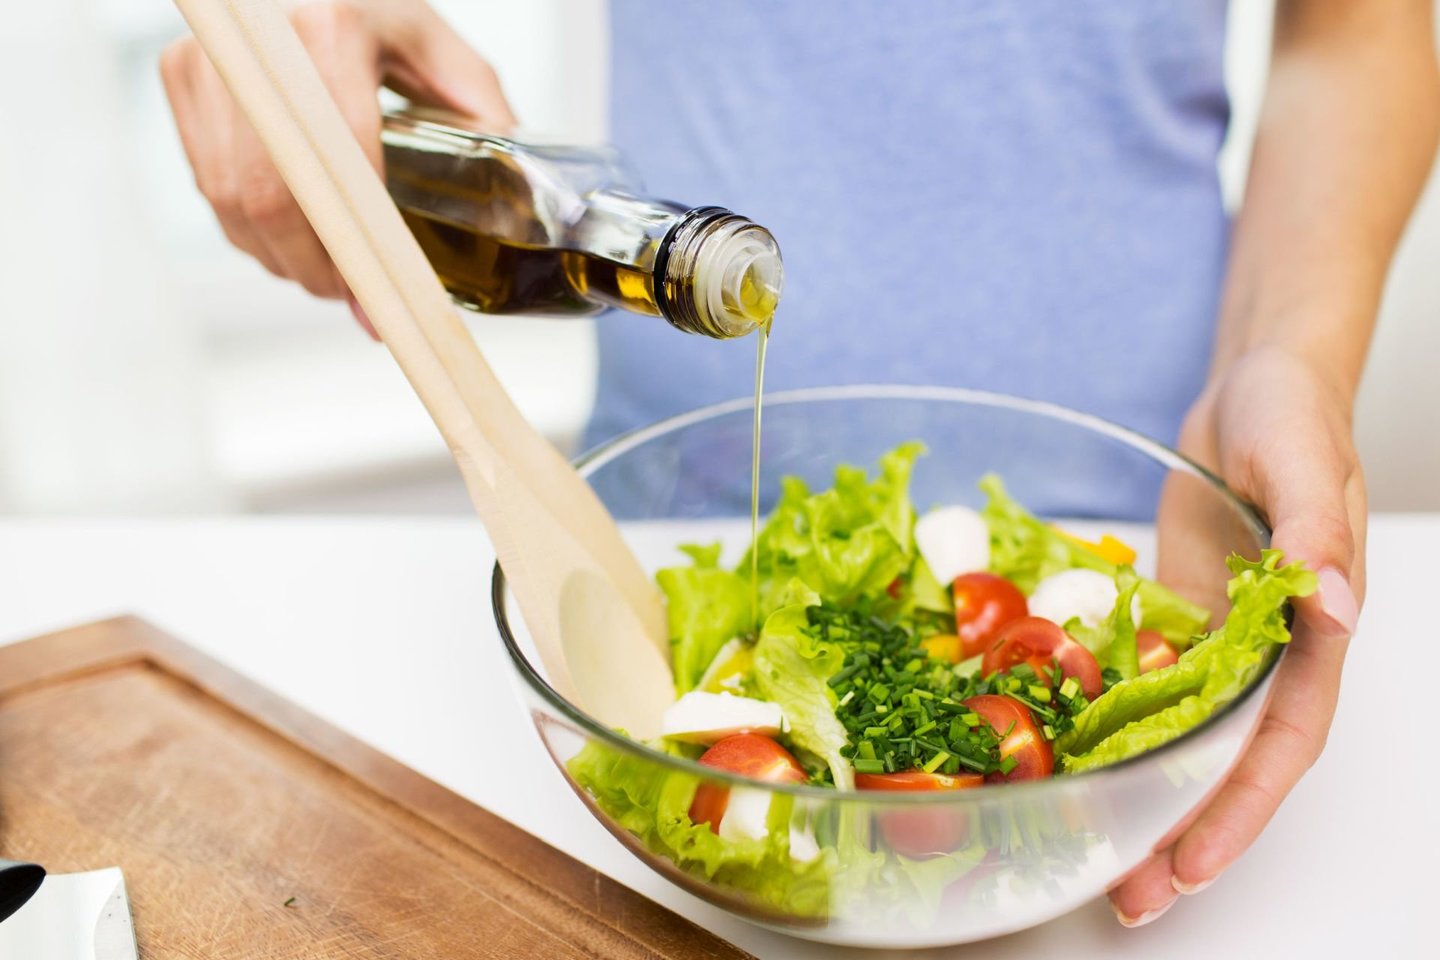 Bent vieną kartą per savaitę panaudodami alyvuogių aliejų savo mityboje, pavyzdžiui, gaminant salotas, galite sumažinti arterijų užsikimšimo riziką. <br> 123rf nuotr.